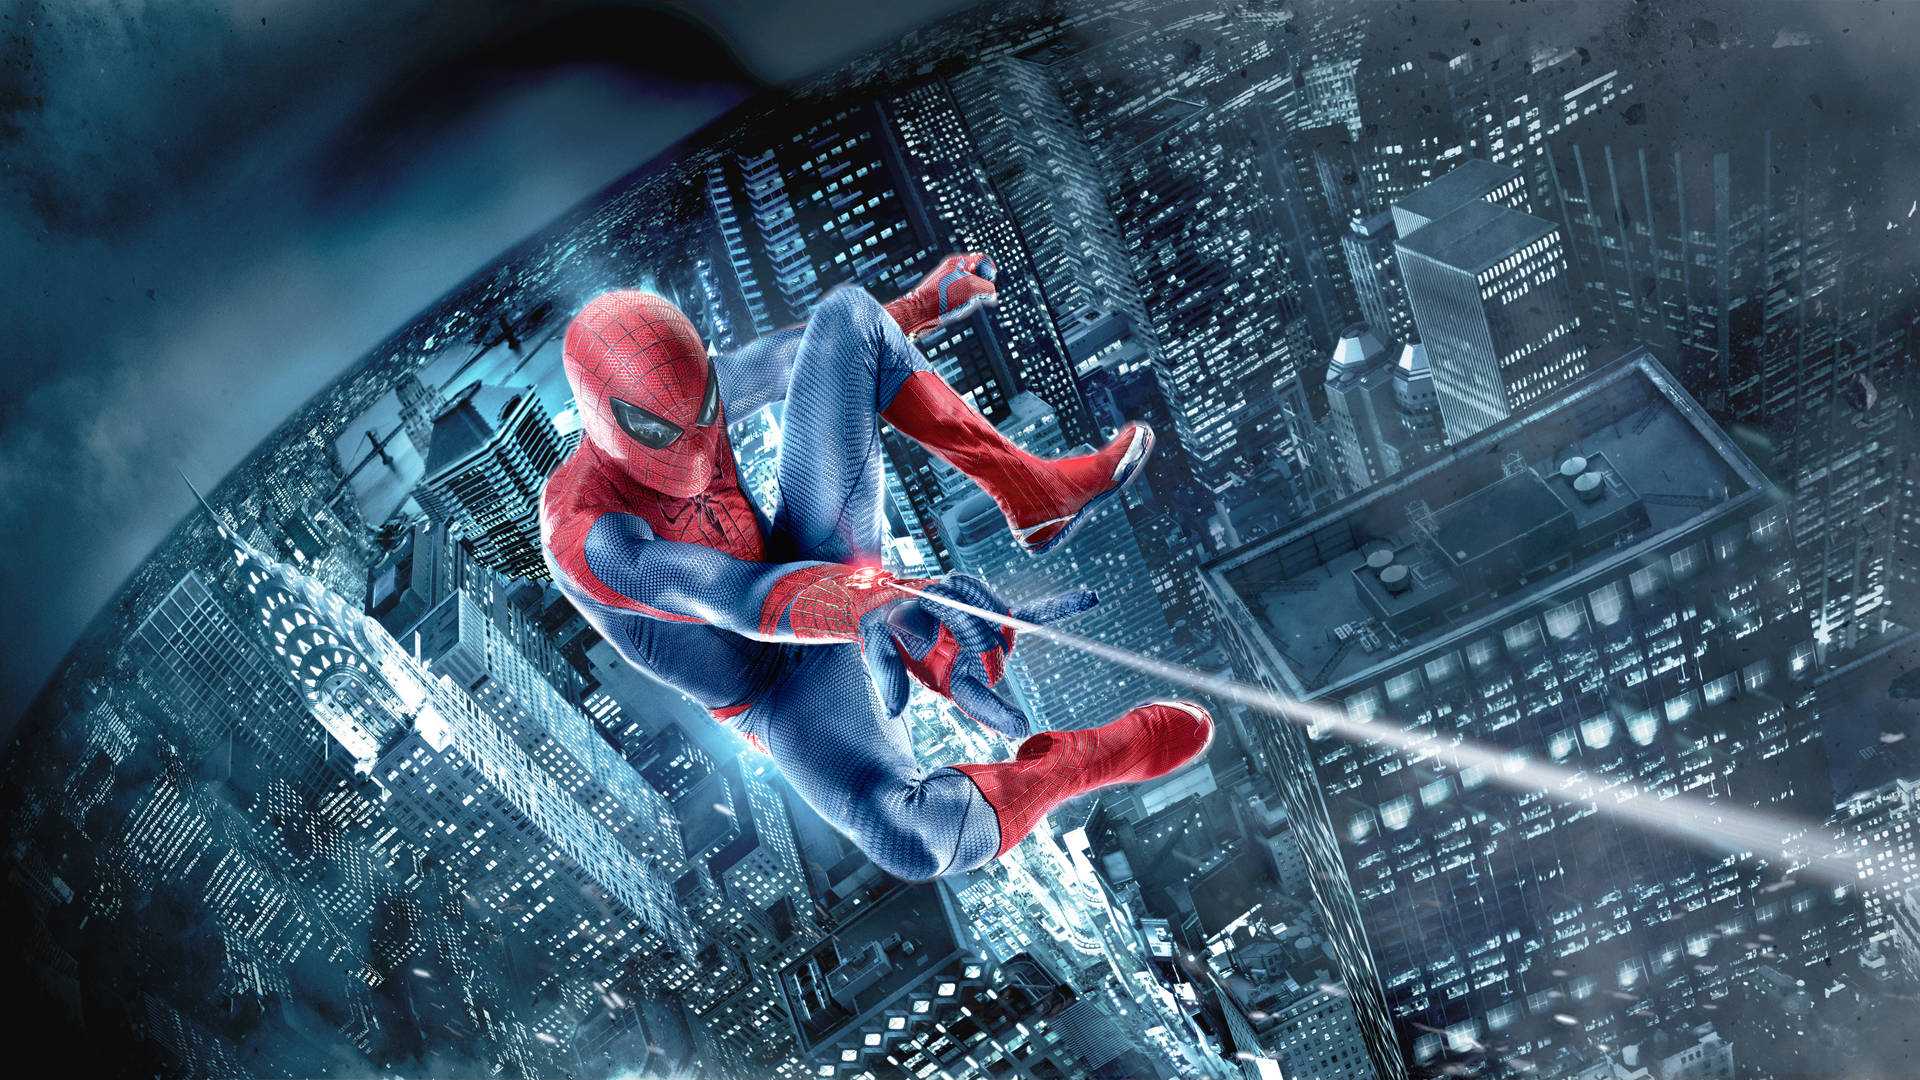 Peterparker Transformándose En El Asombroso Spider-man. Fondo de pantalla